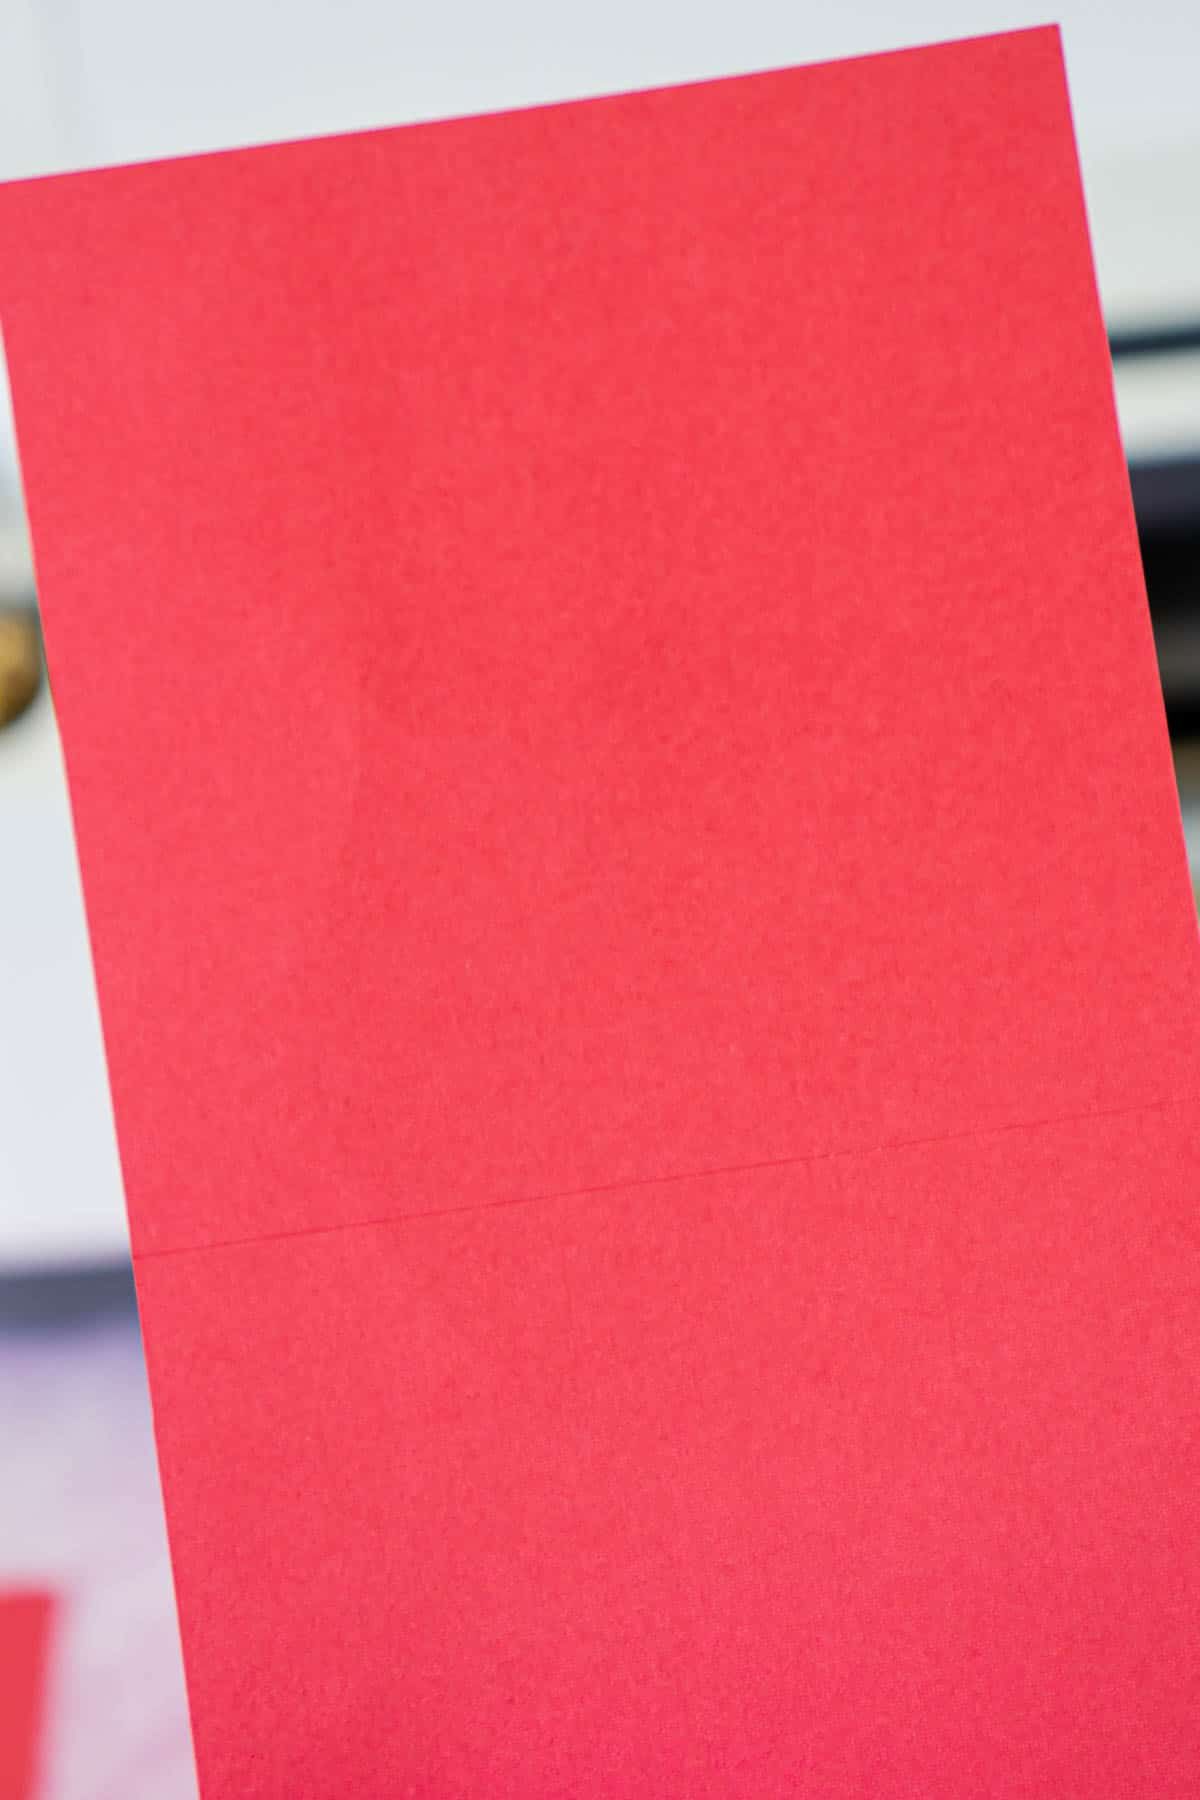 Raudonos kortelės gabalas su taškų linijomis